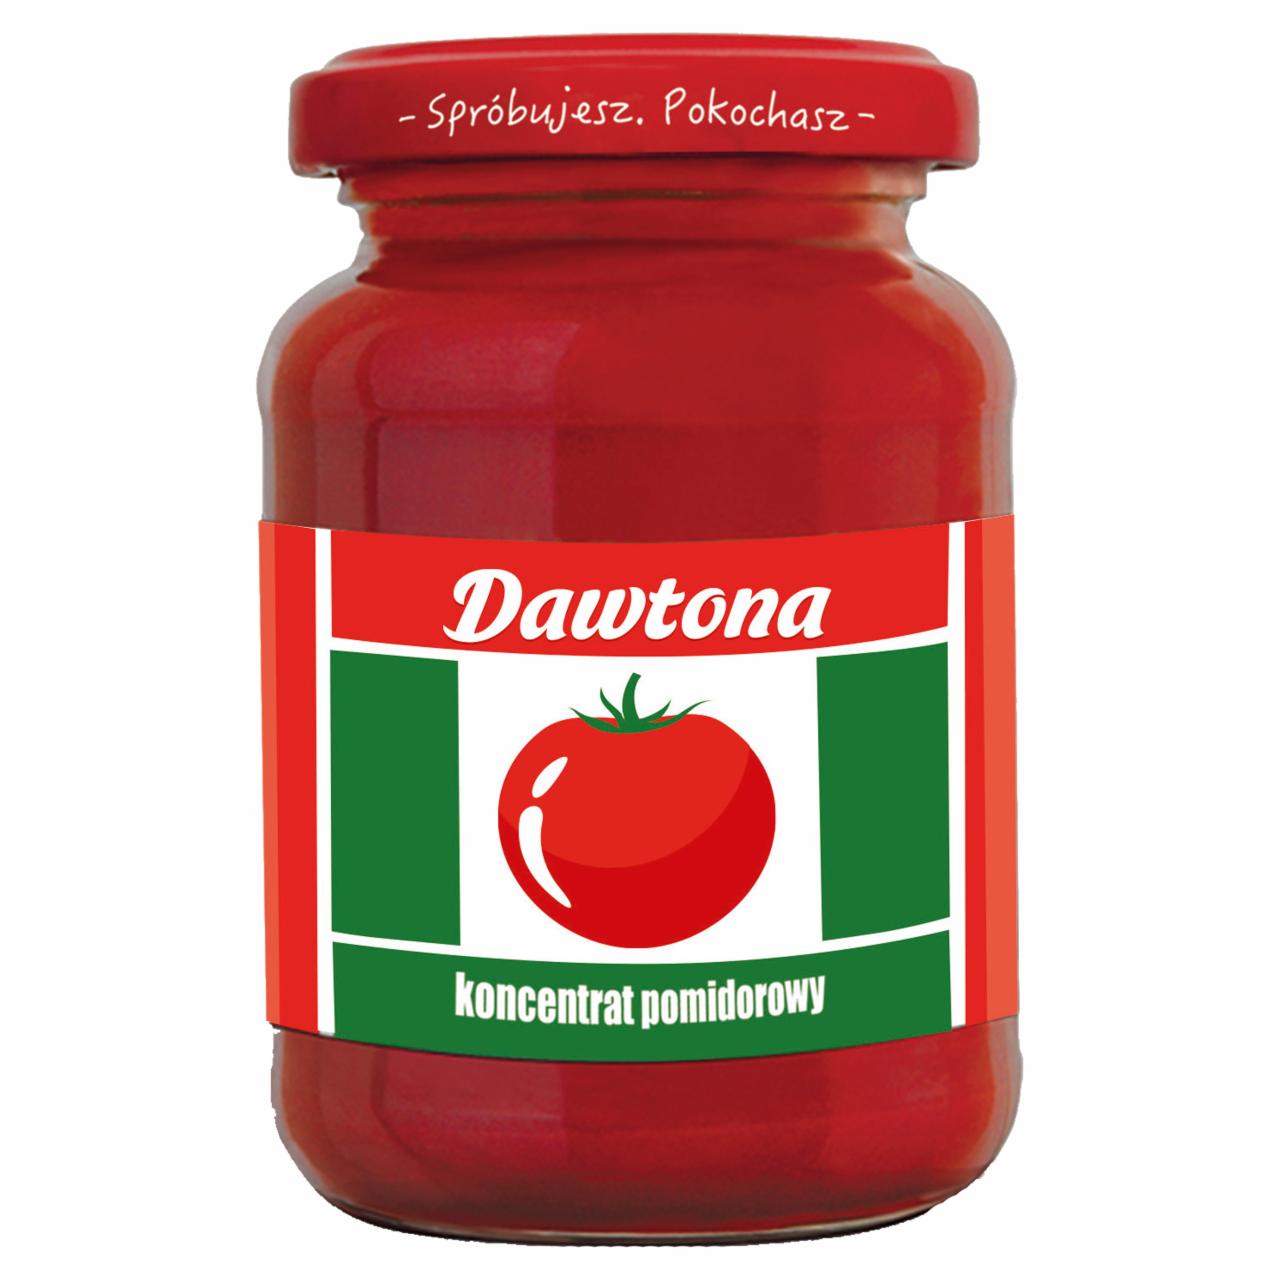 Zdjęcia - Dawtona Koncentrat pomidorowy 200 g